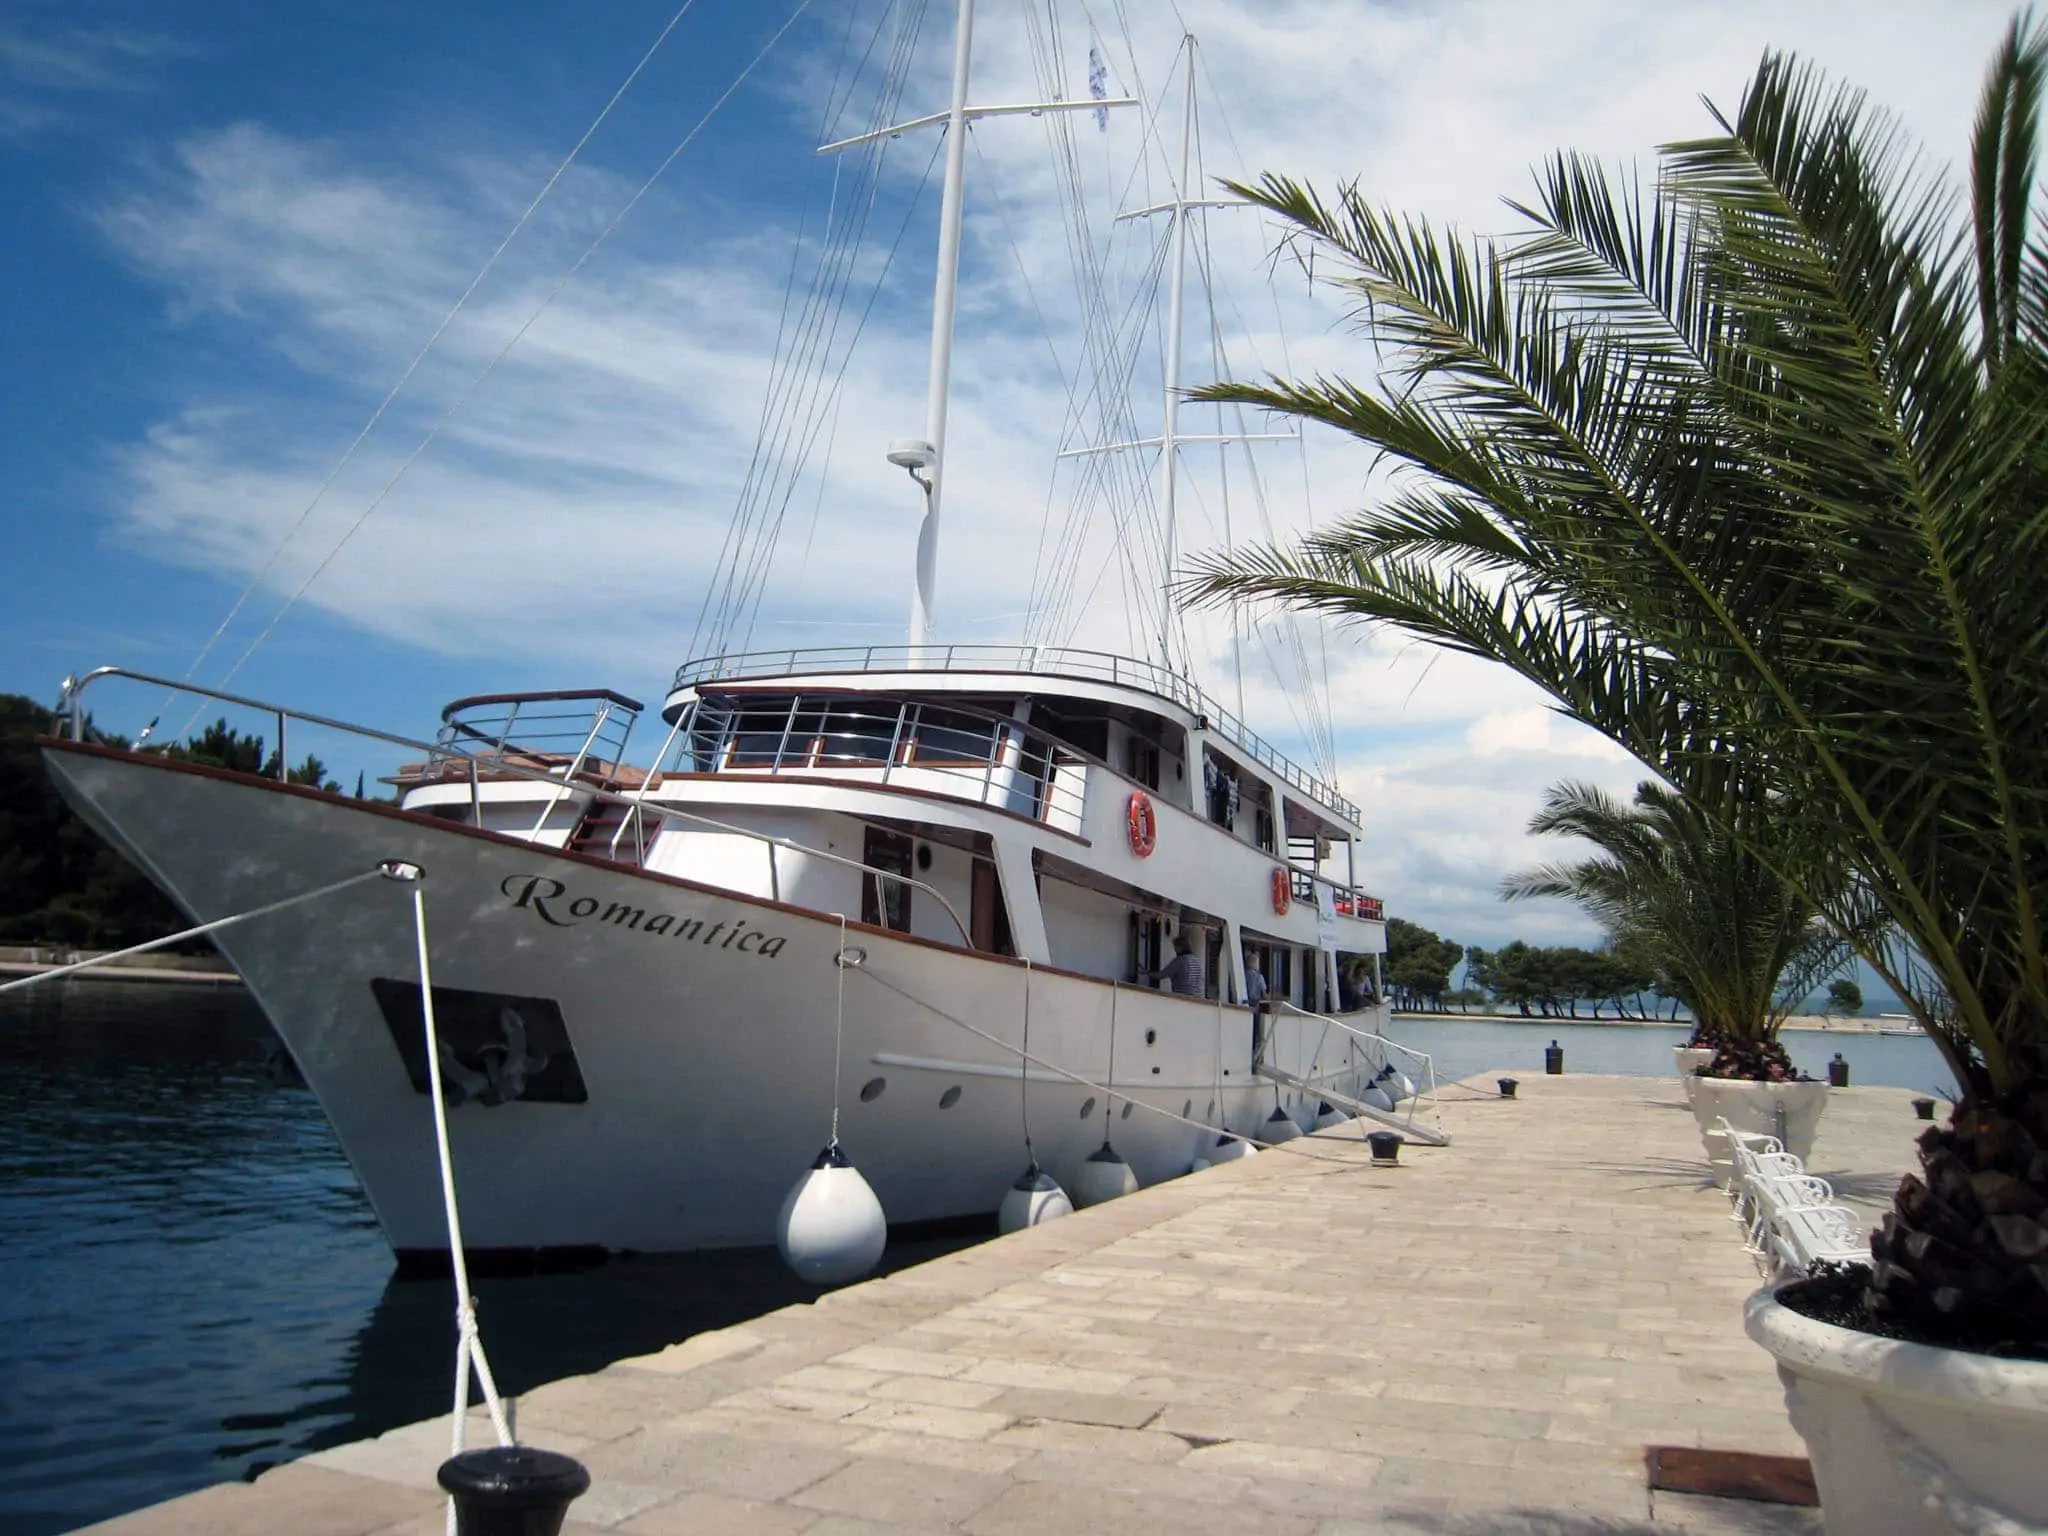 Tour De Vines Croatia Ships Guest Pictures Nad Romantica 2